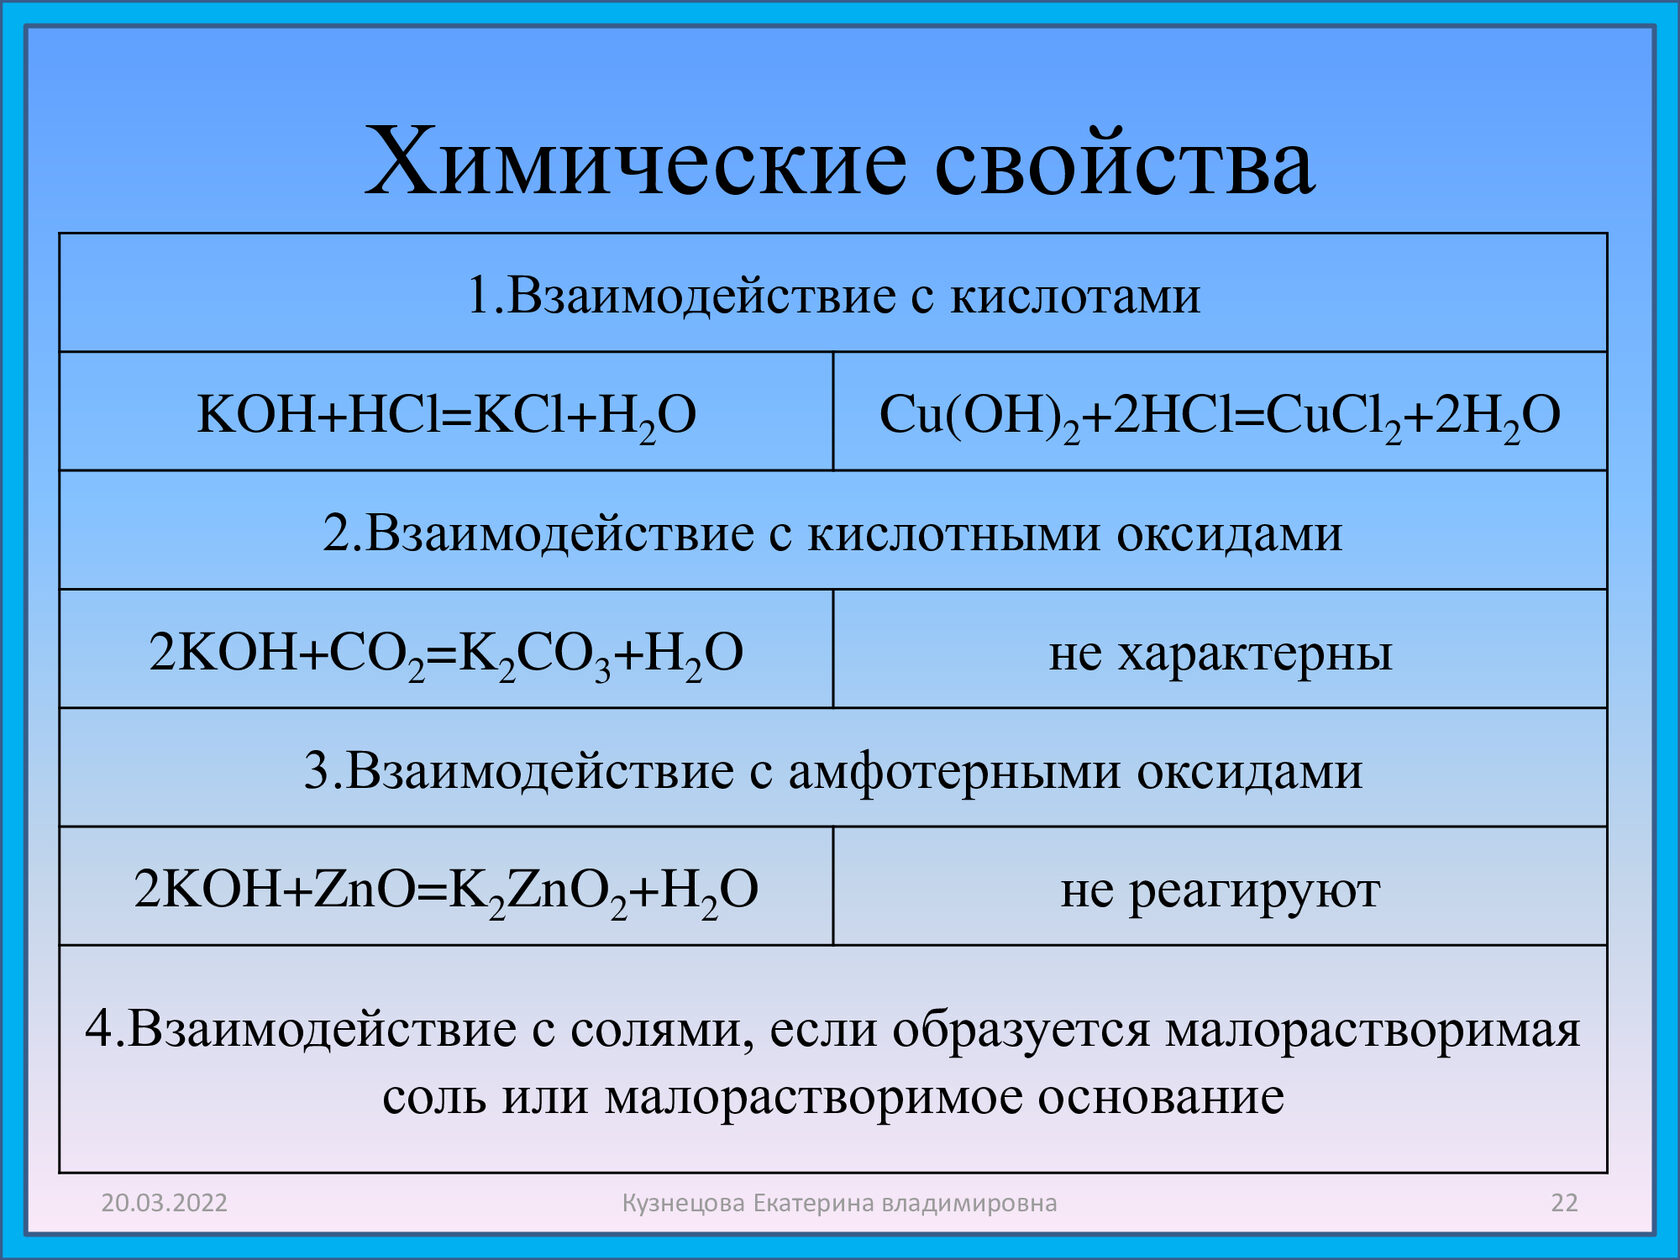 Основные свойства щелочей. Химические свойства. Koh химические свойства. Koh взаимодействует с. Химические свойства взаимодействие с кислотами.